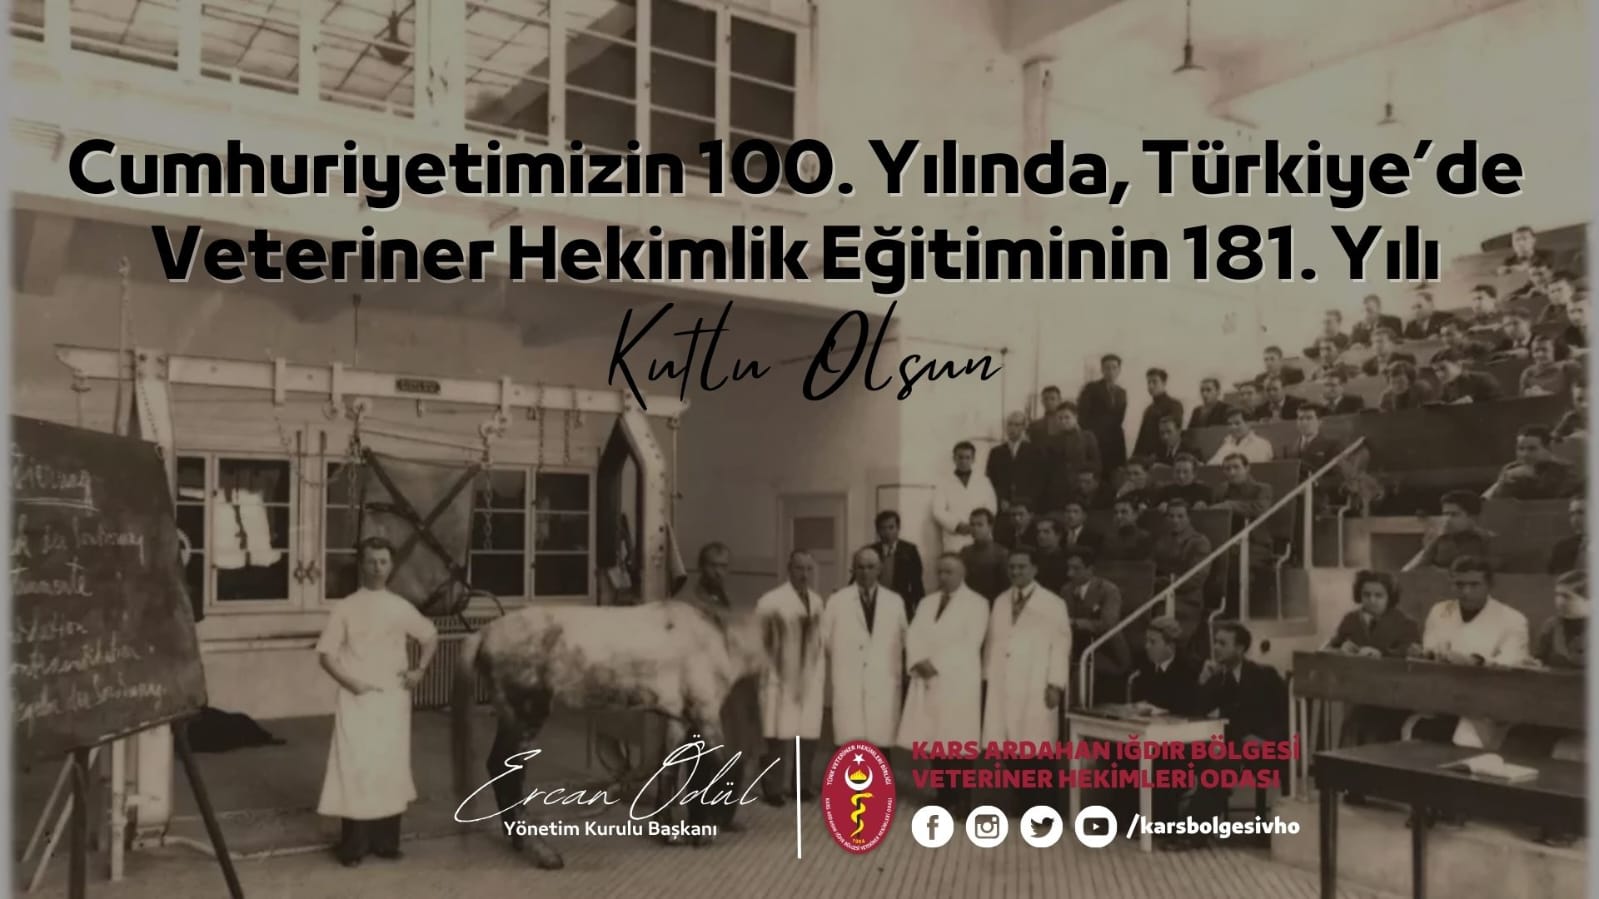 Türkiye'de Veteriner Hekimlik Eğitiminin 181. Yılı